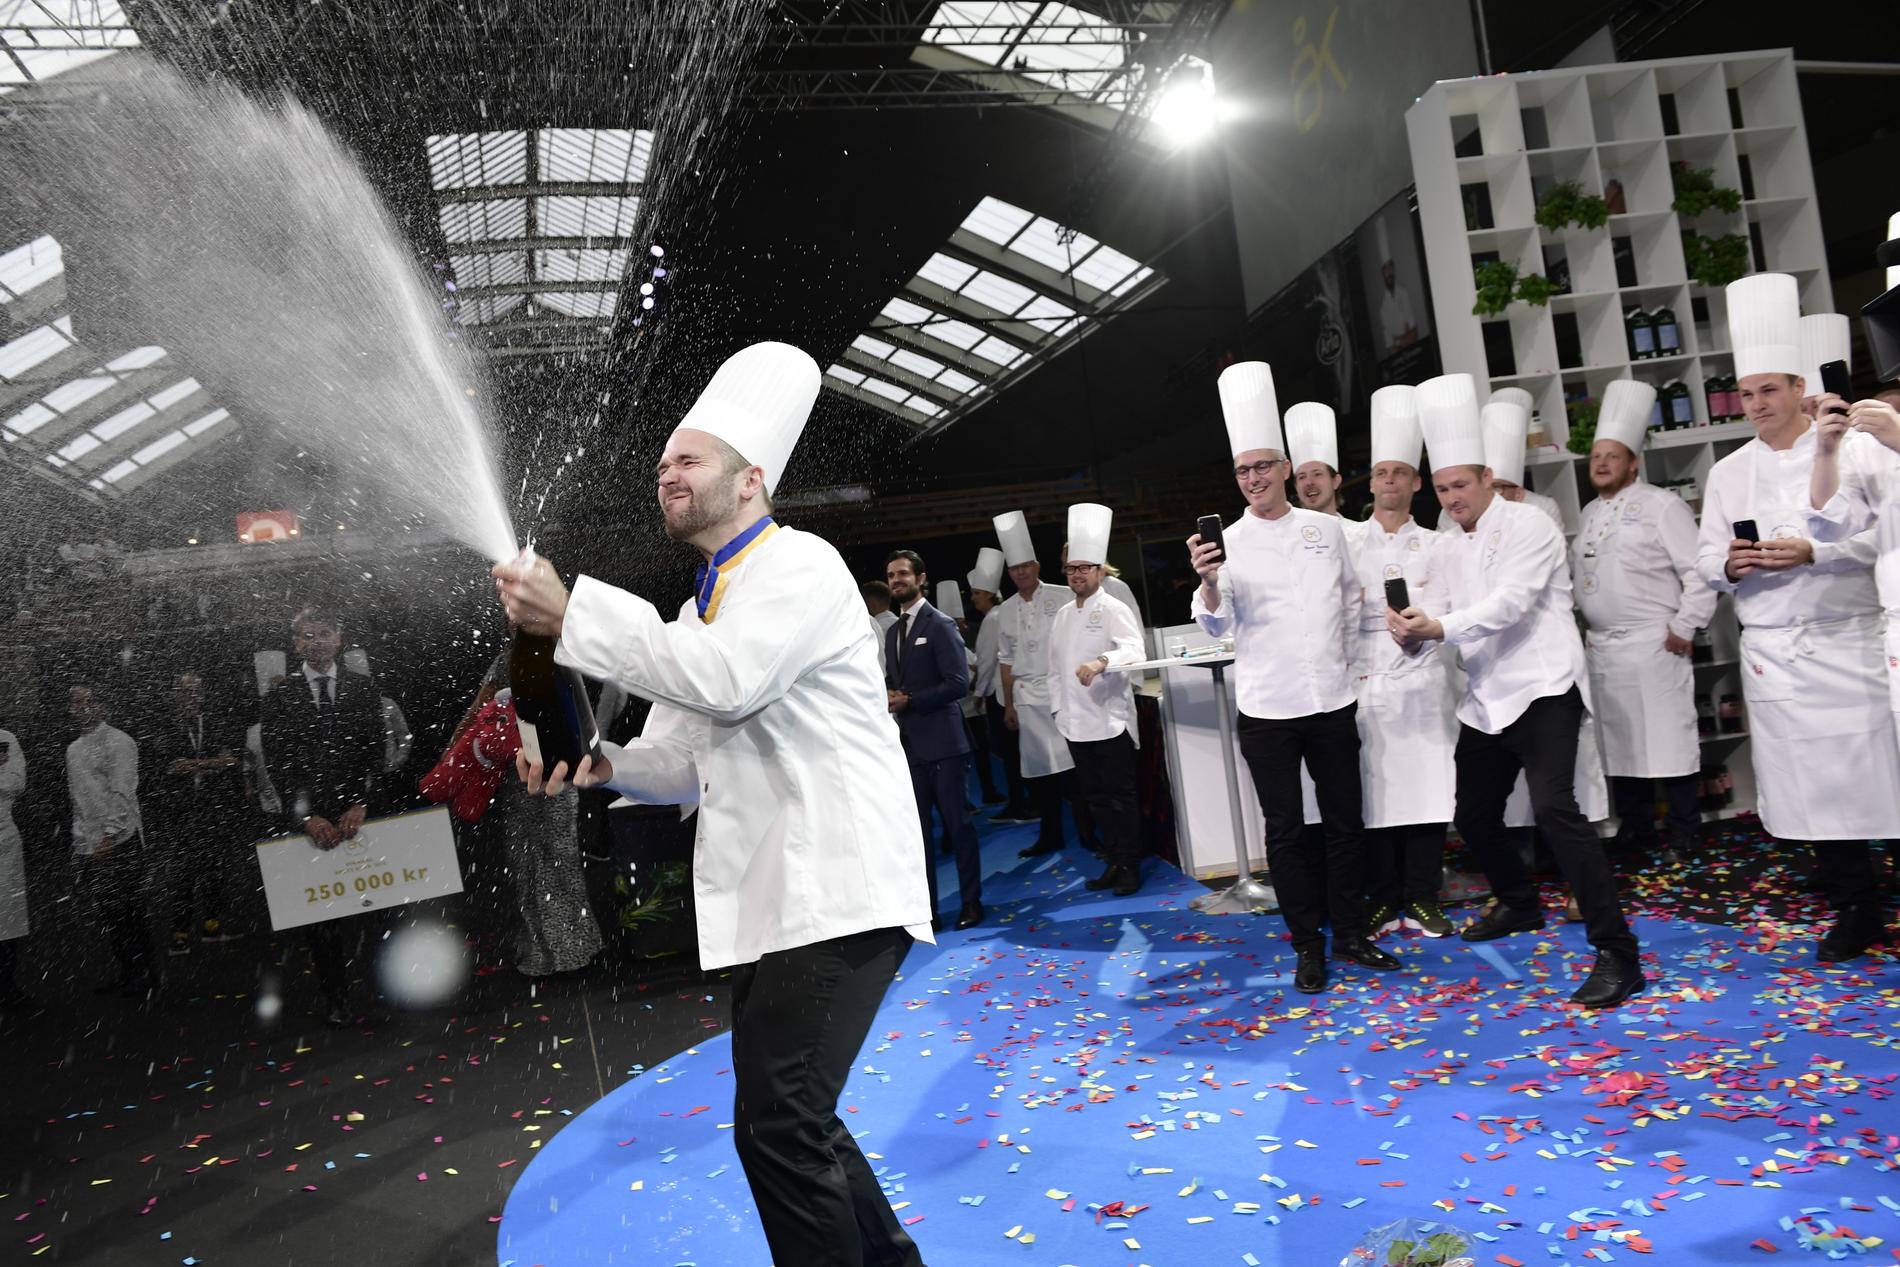 David Lundqvist firar att han vunnit Årets kock 2018, som avgjordes i Kungliga tennishallen under två dagar.